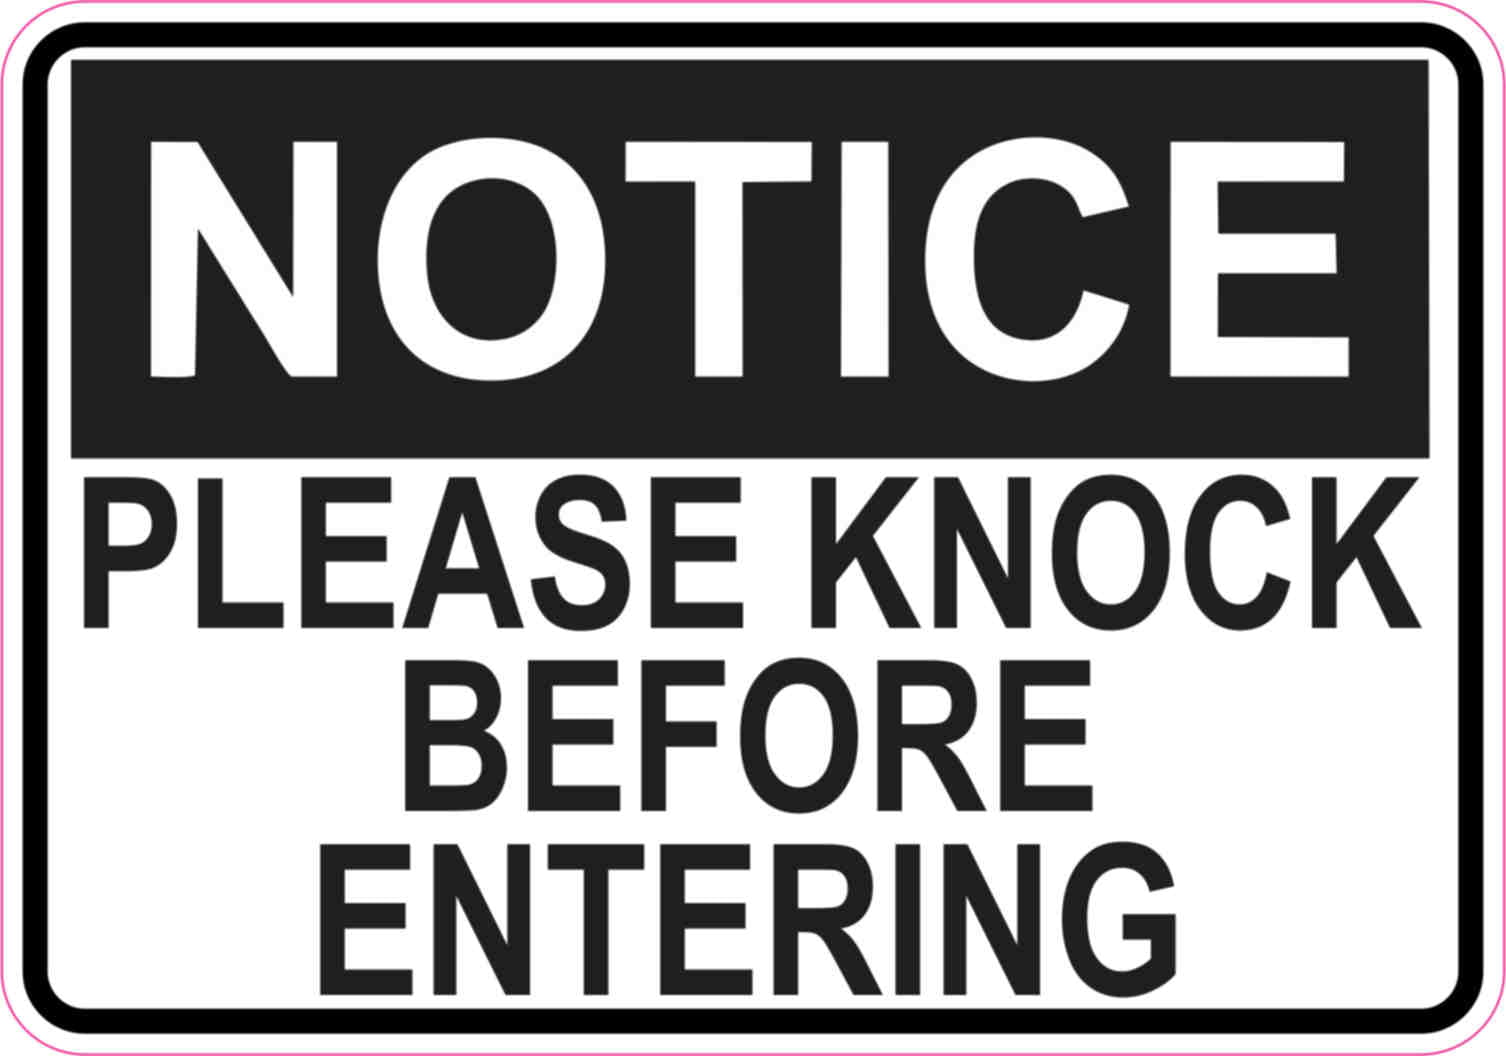 5in-x-3-5in-notice-please-knock-before-entering-magnet-door-sign